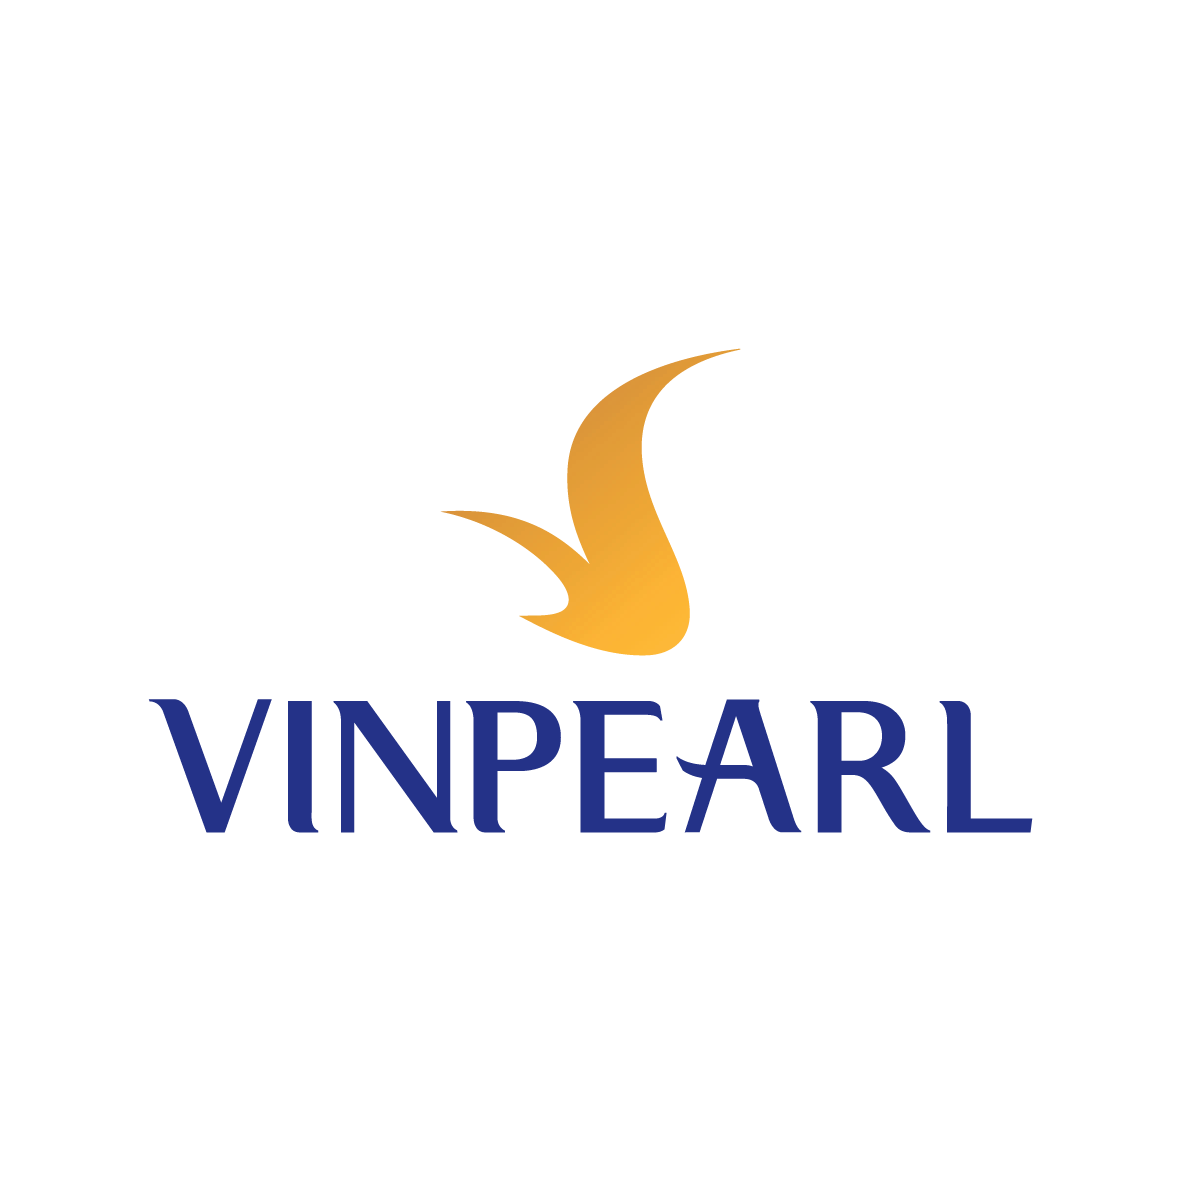 vinpearl